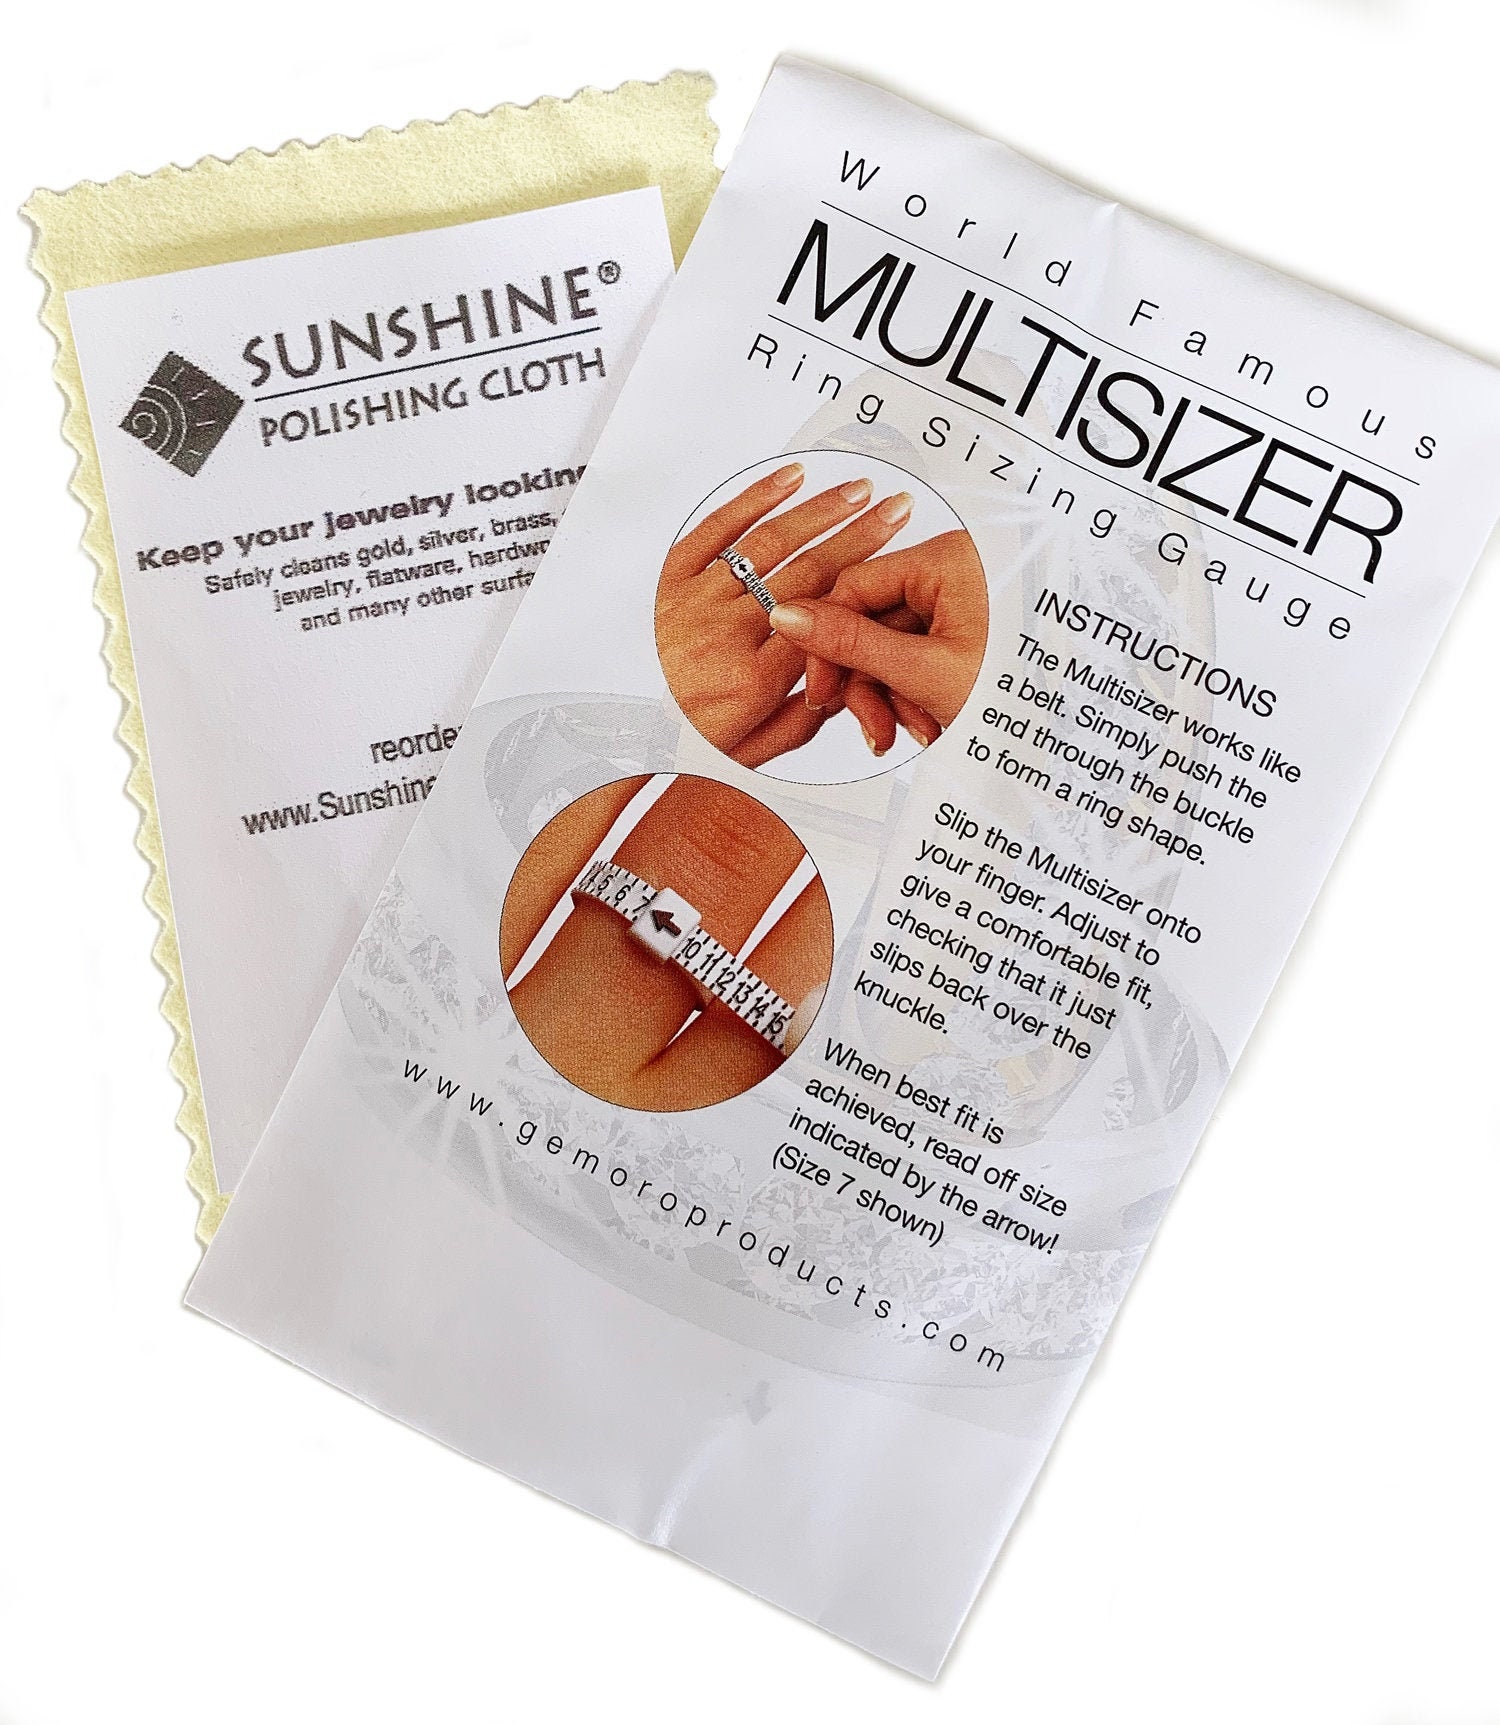 MultiSizer Ring Sizing Belt & Sunshine Polishing Cloth